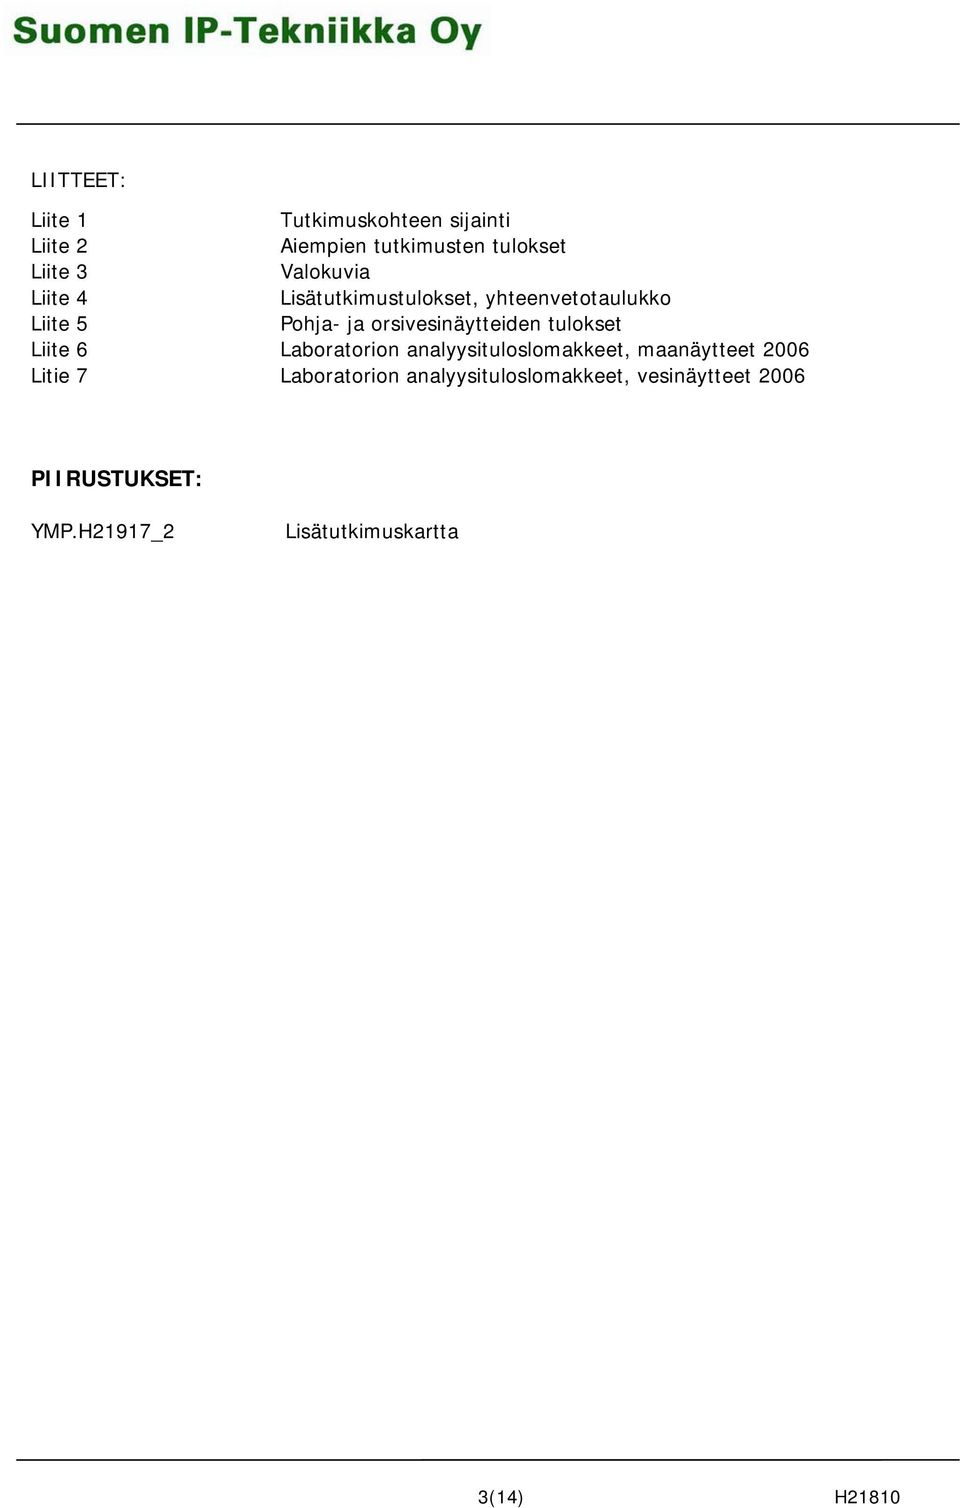 orsivesinäytteiden tulokset Liite 6 Laboratorion analyysituloslomakkeet, maanäytteet 2006